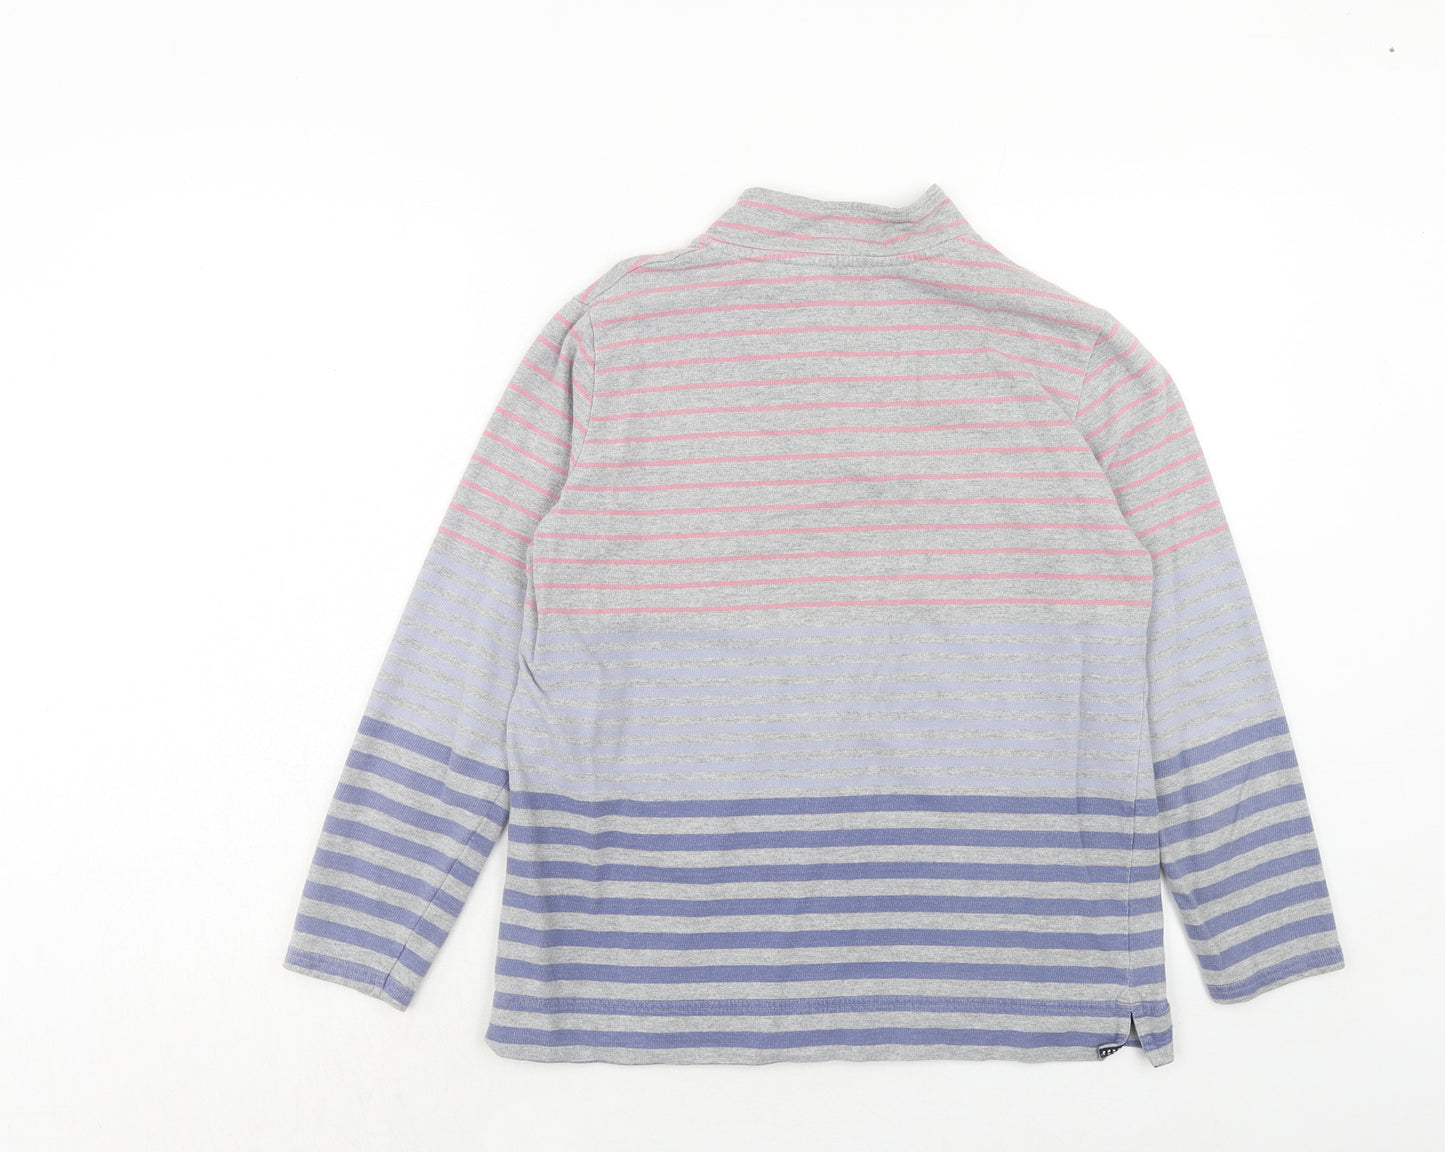 EWM Womens Multicoloured Striped Cotton Pullover Sweatshirt Size S Button